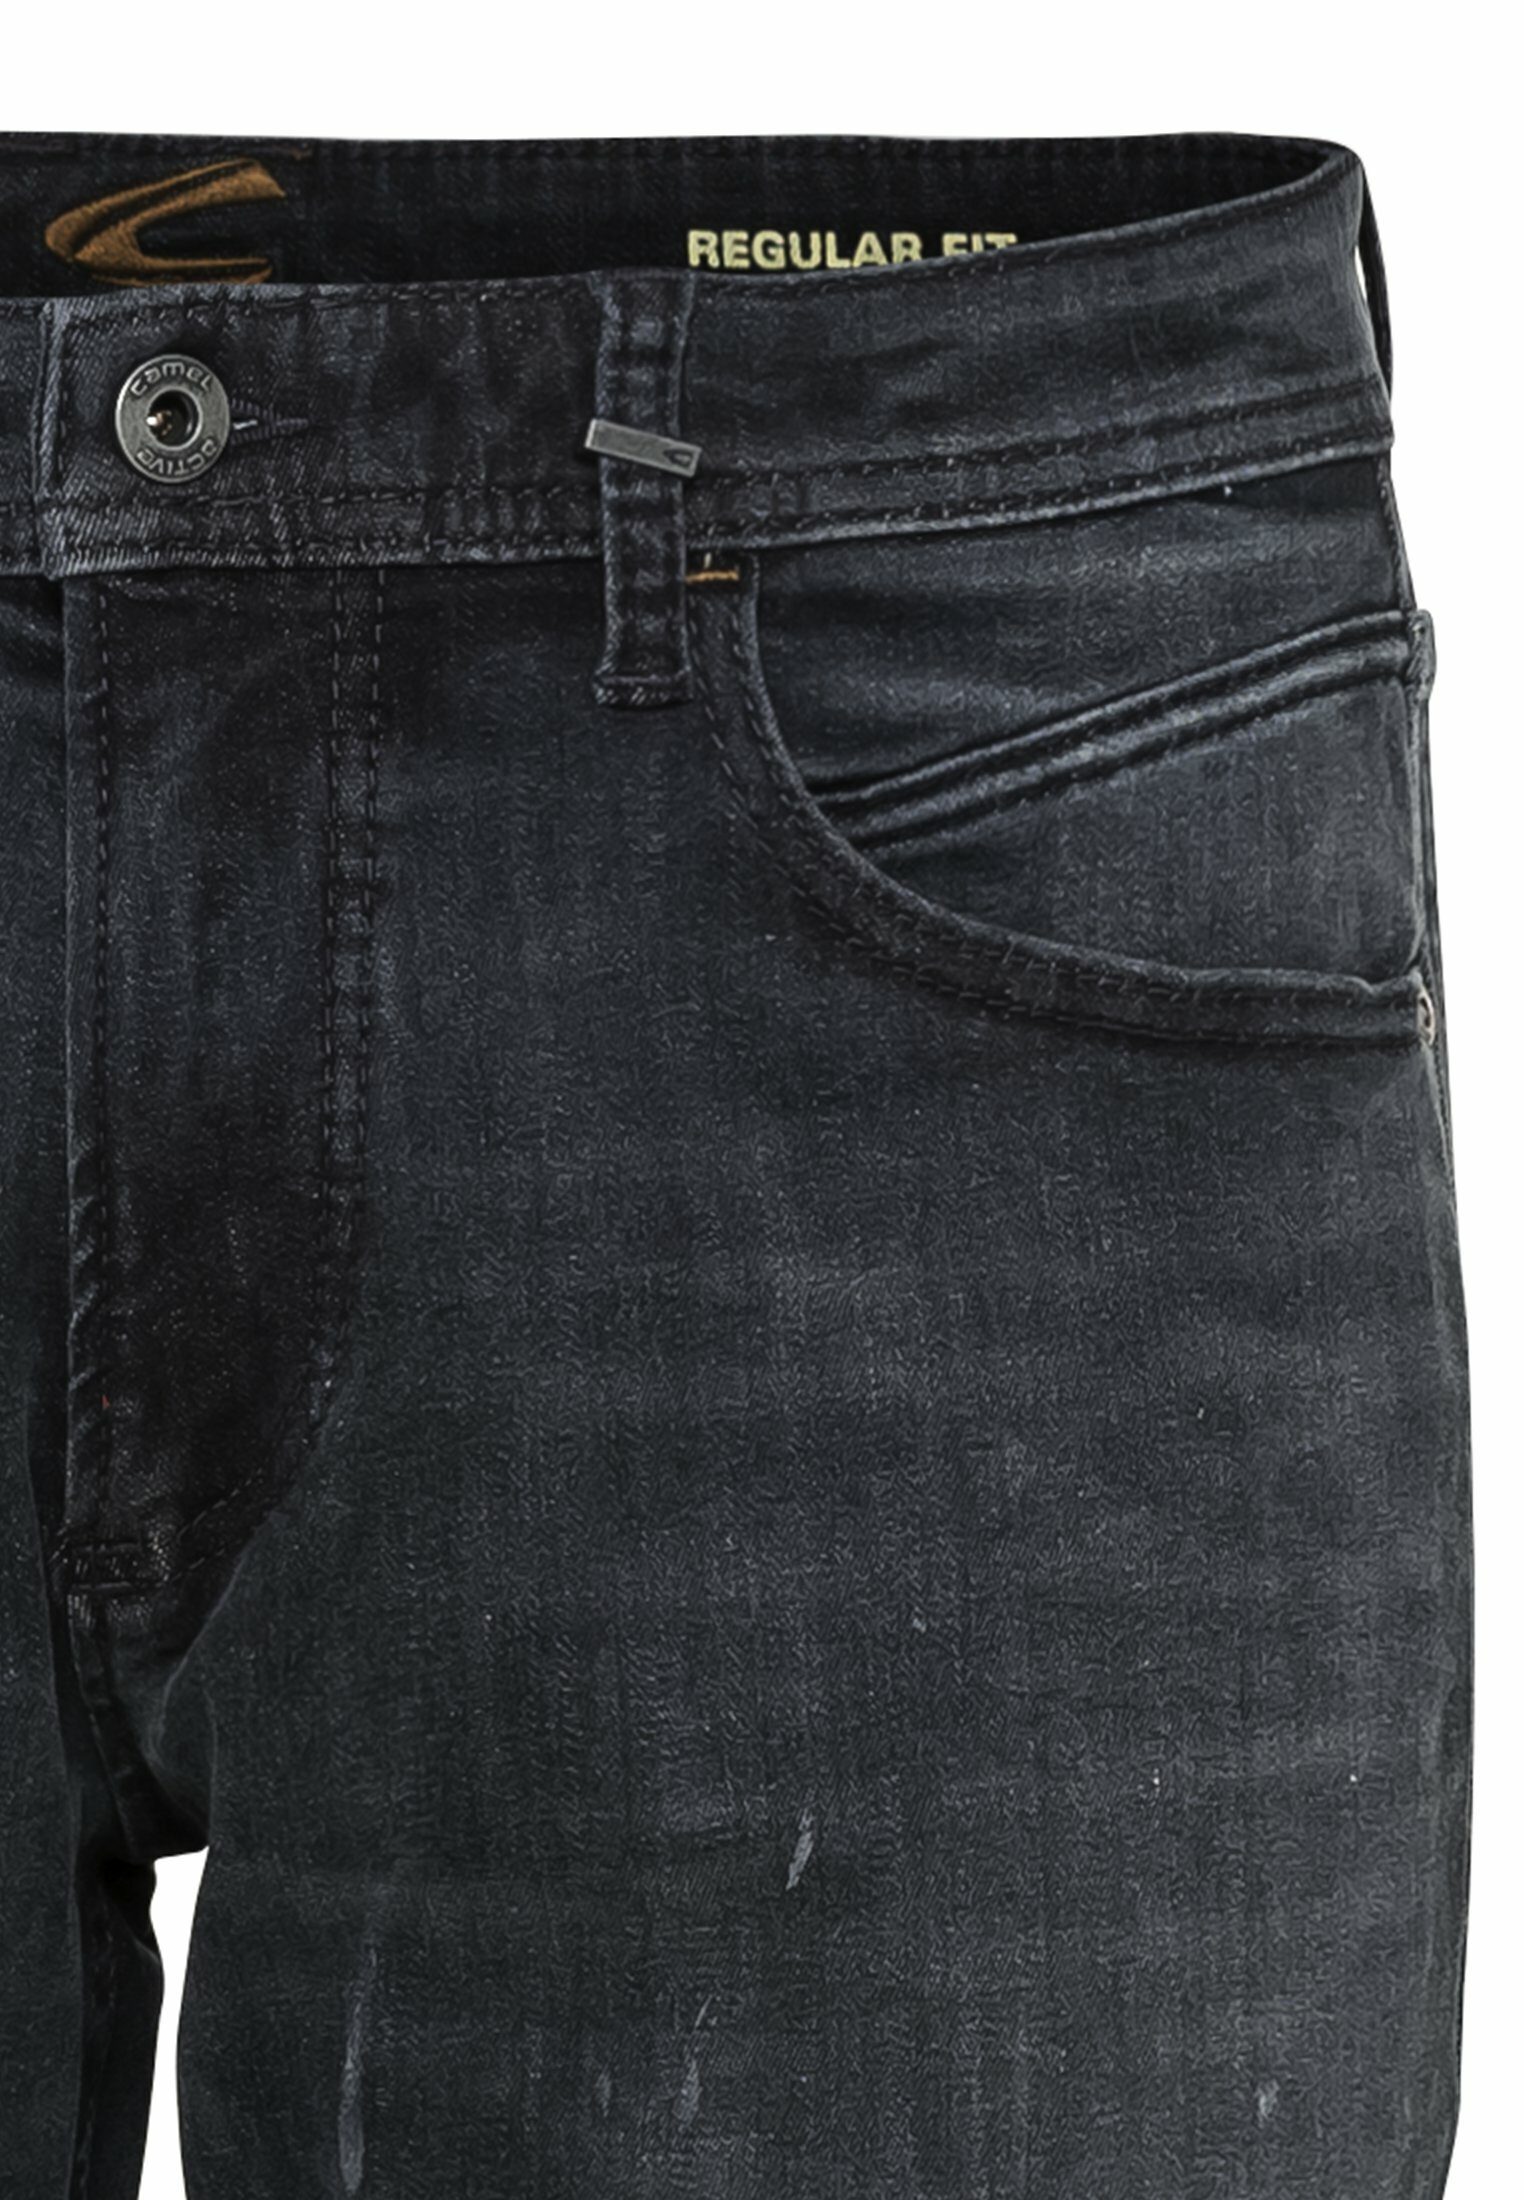 active Regular Blau 5-Pocket Jeans Baumwolle Fit camel aus 5-Pocket-Jeans